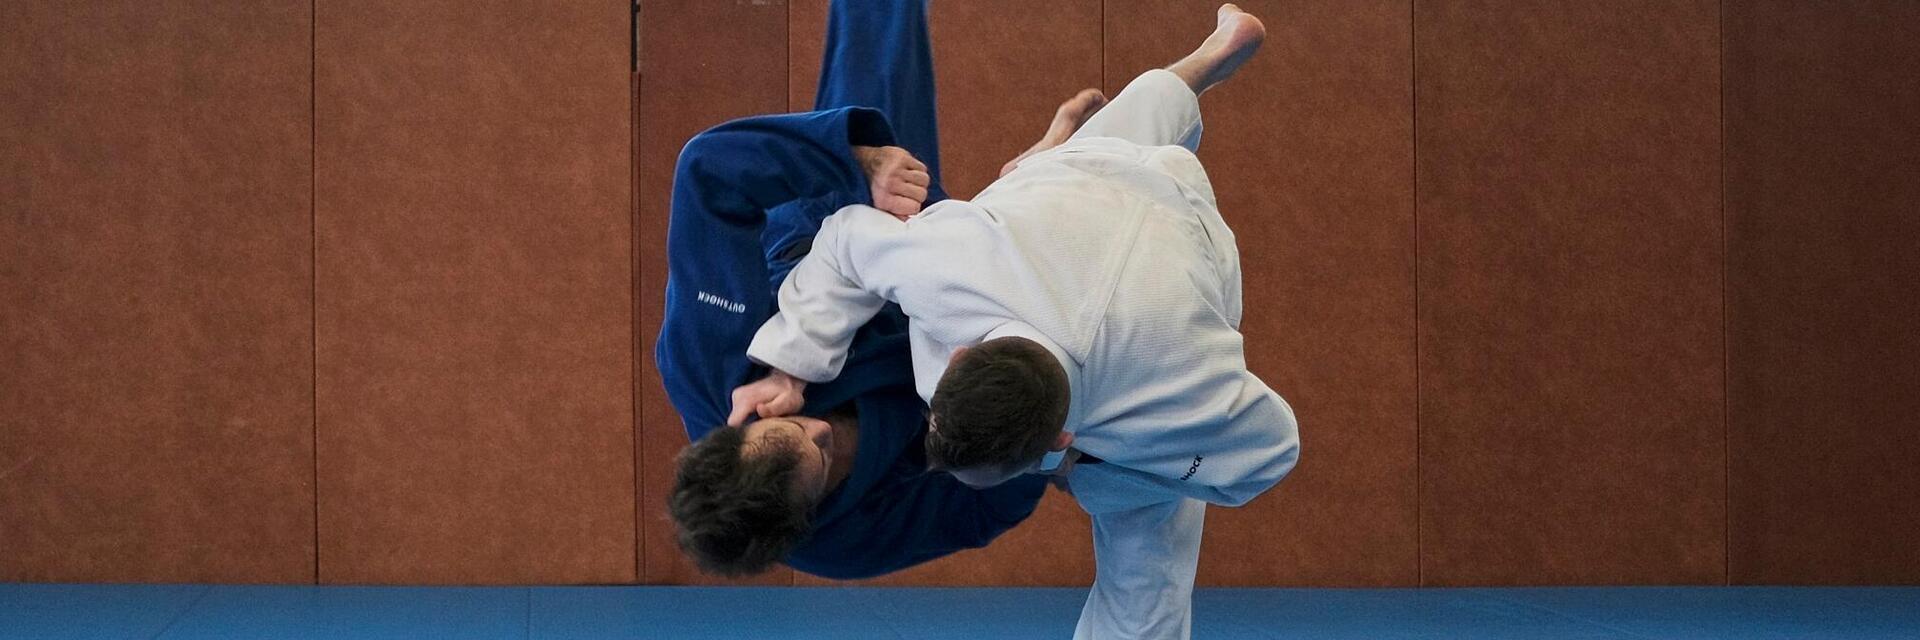 SAC JU DO – L'Esprit du Judo